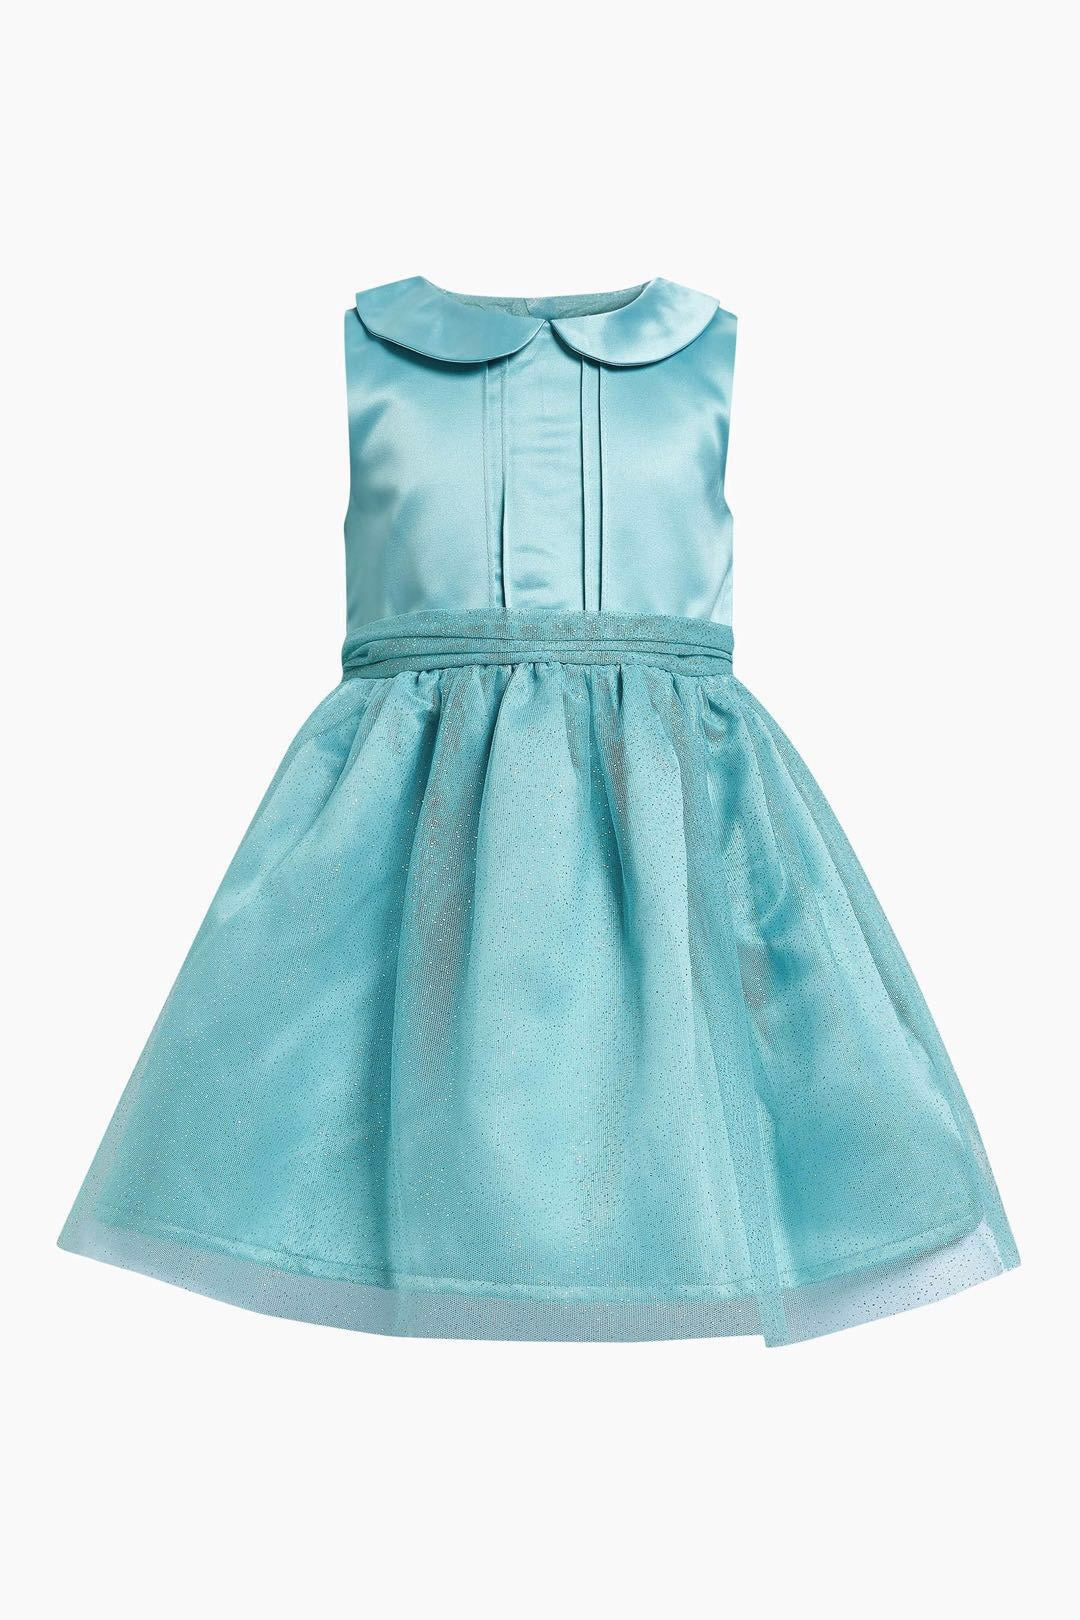 1-6Y Kids Elegant Glitter Tulle Dress G20124D